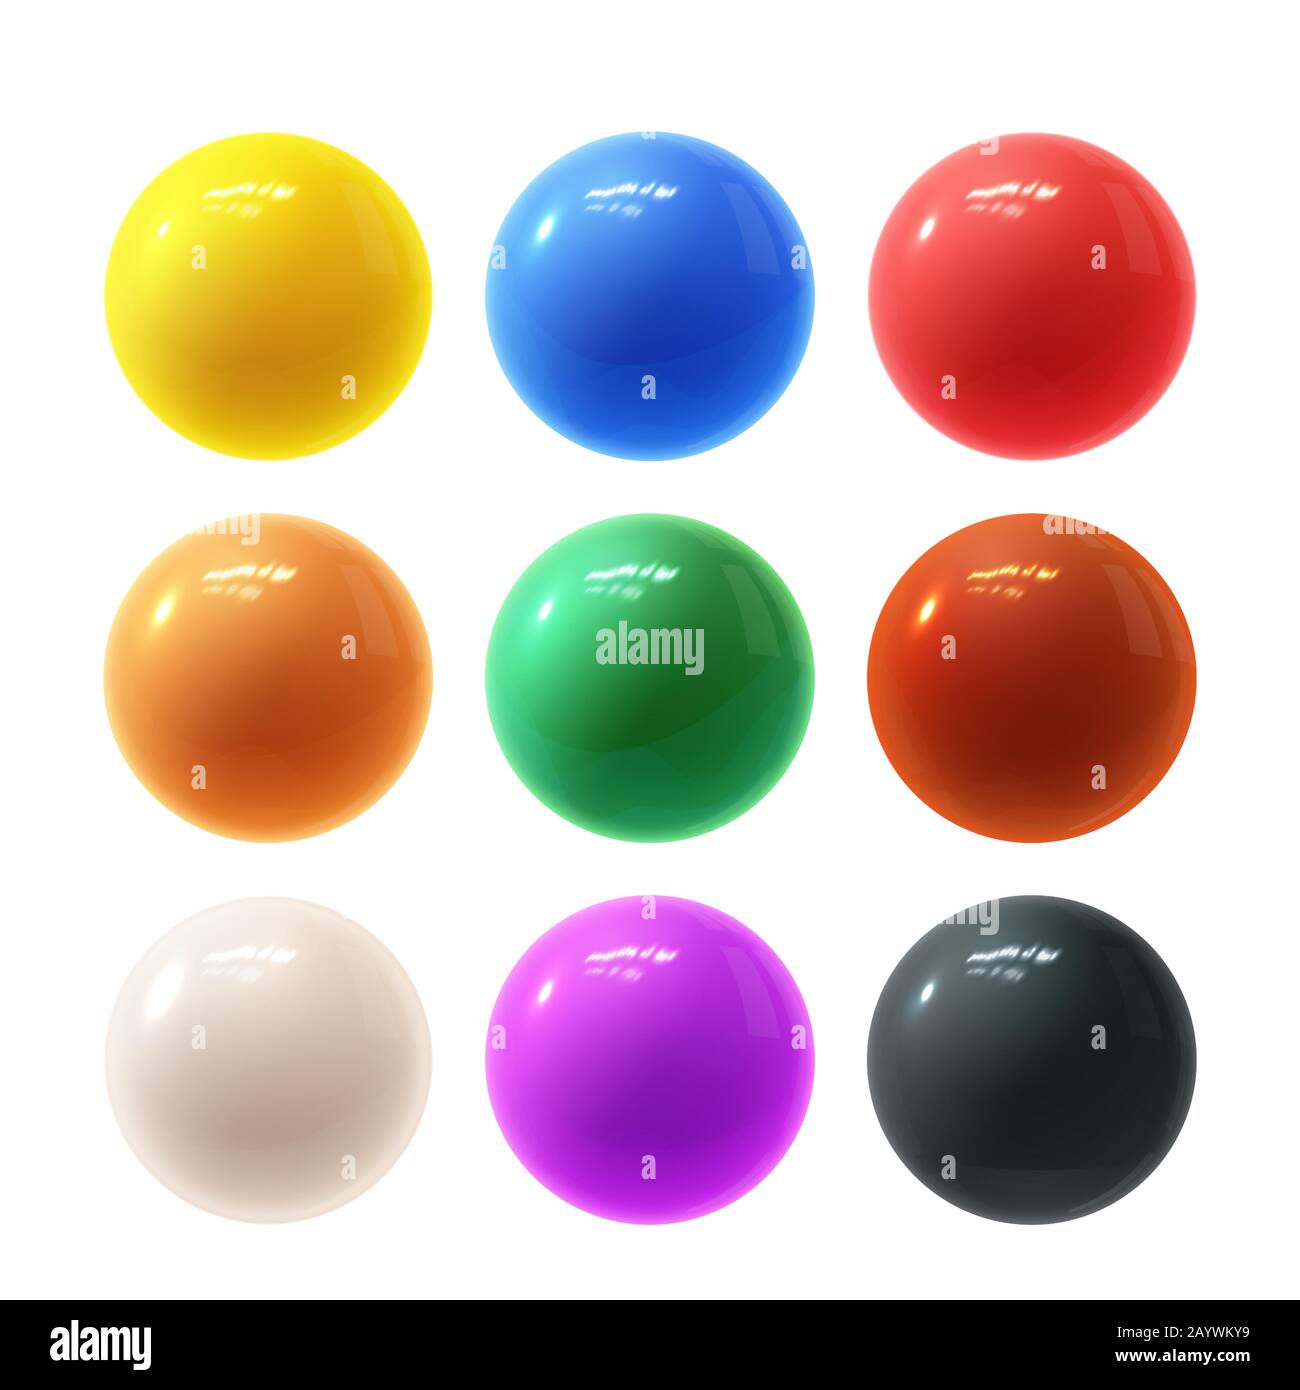 Realistico e moderno set vettoriale di coloratissime sfere in plastica lucida con riflessi luminosi Illustrazione Vettoriale